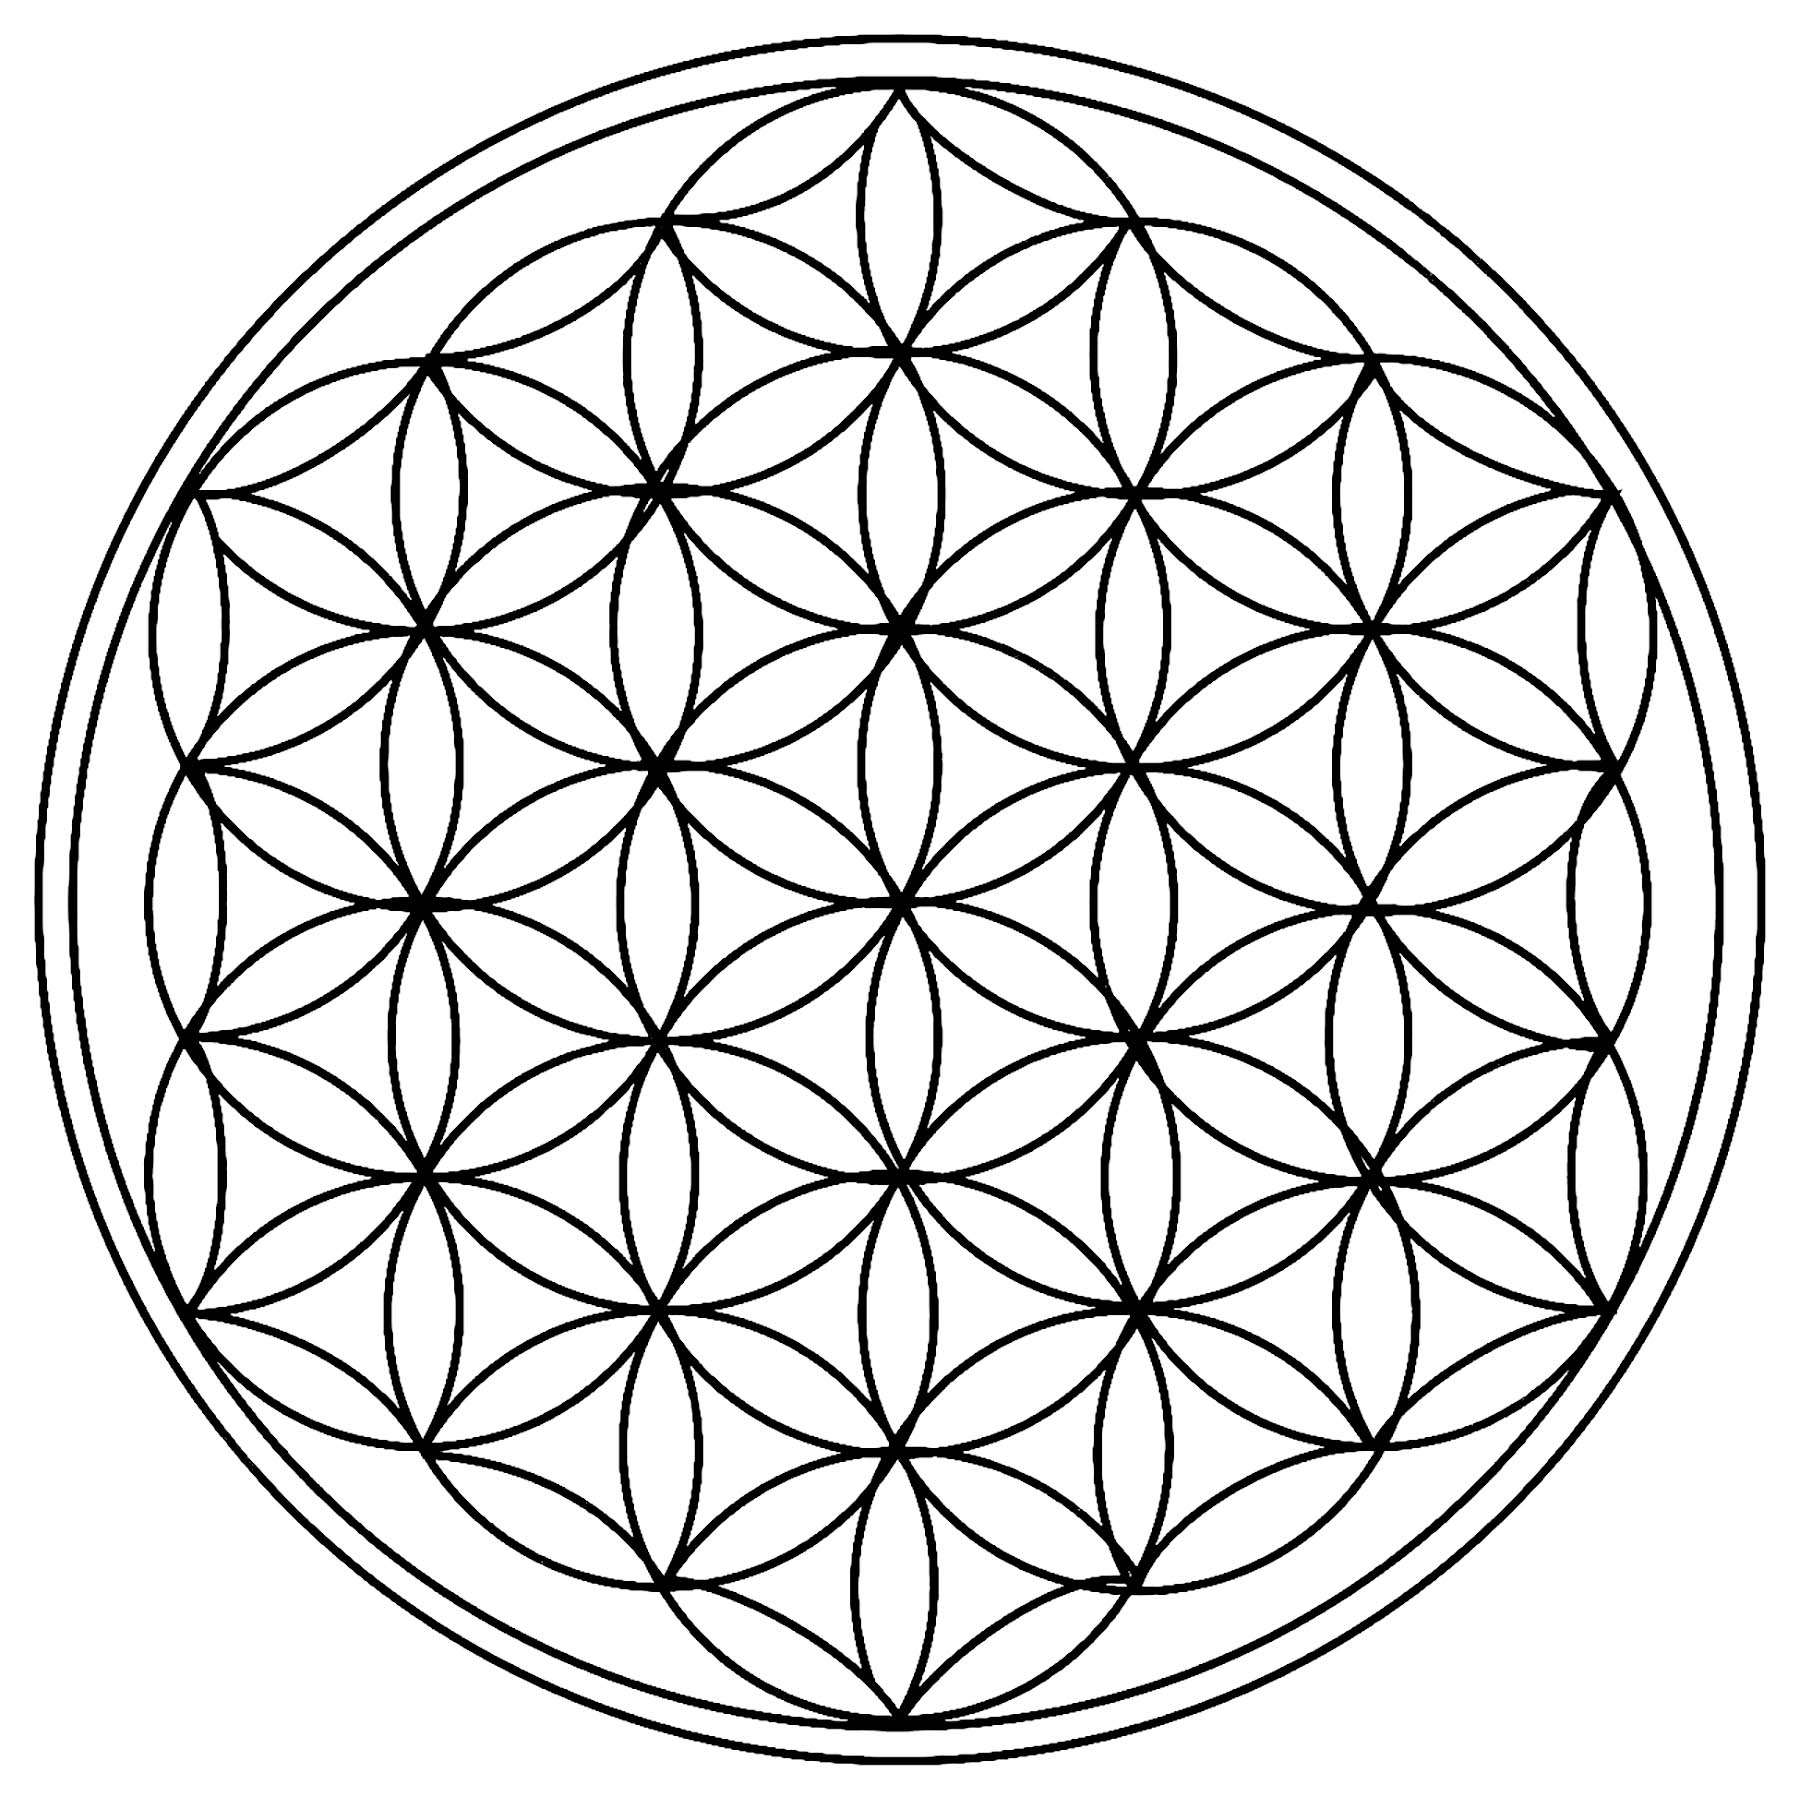 De multiples cercles de taille identique, formant une forme totalement unique